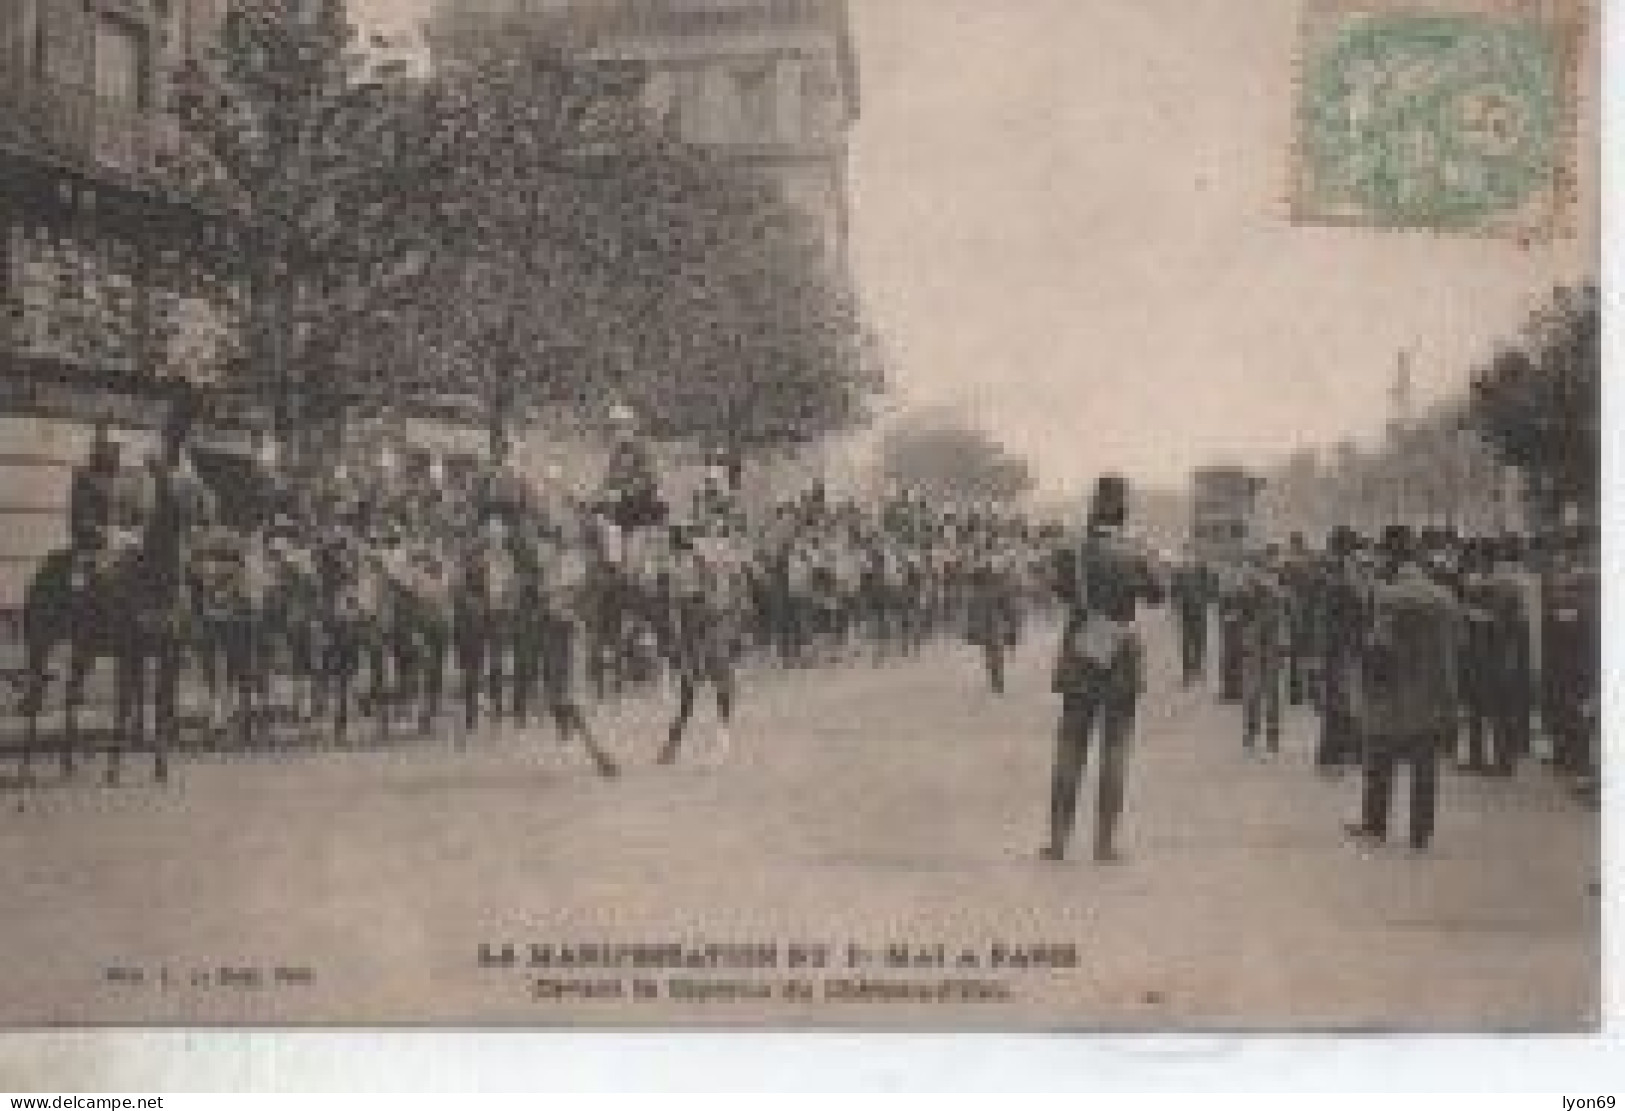 PARISVLA MANIFESTATION  DU 1ER MAI  DEVANT LA CASERNE  DU CHATEAU  D EAU DATE DEPART 1906025 - Labor Unions